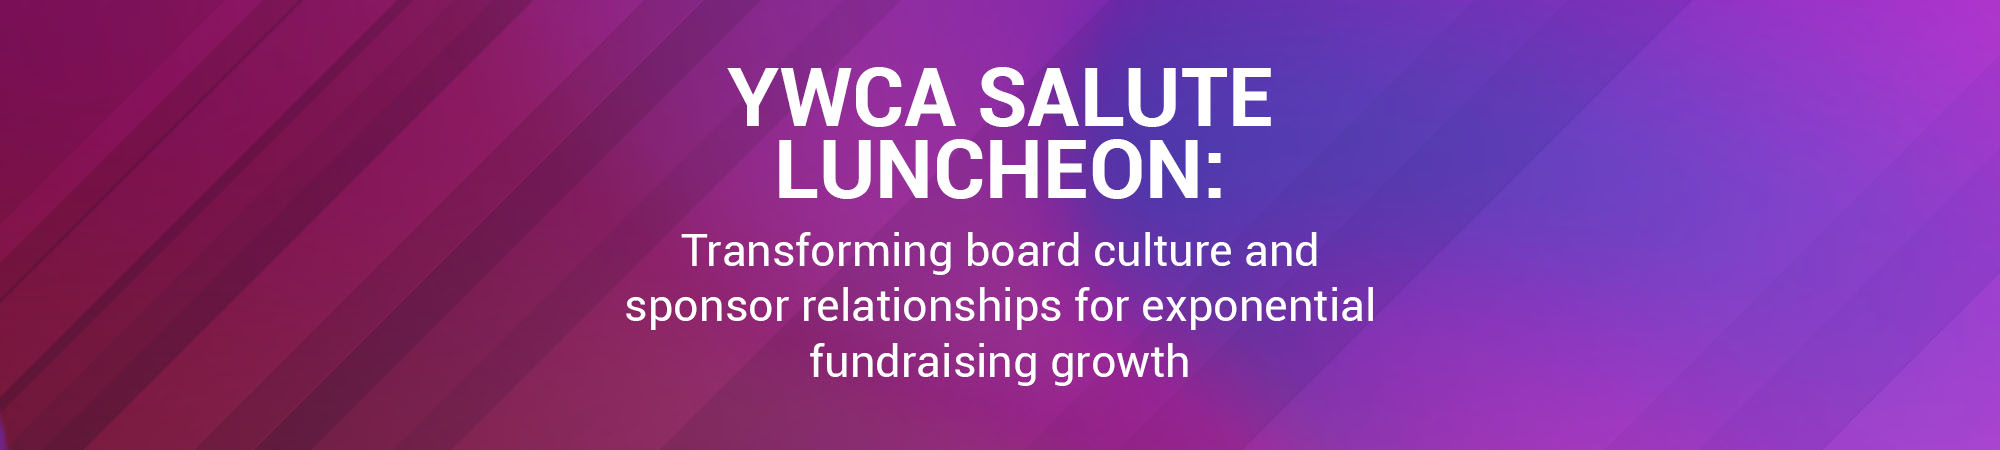 YWCA Salute Luncheon